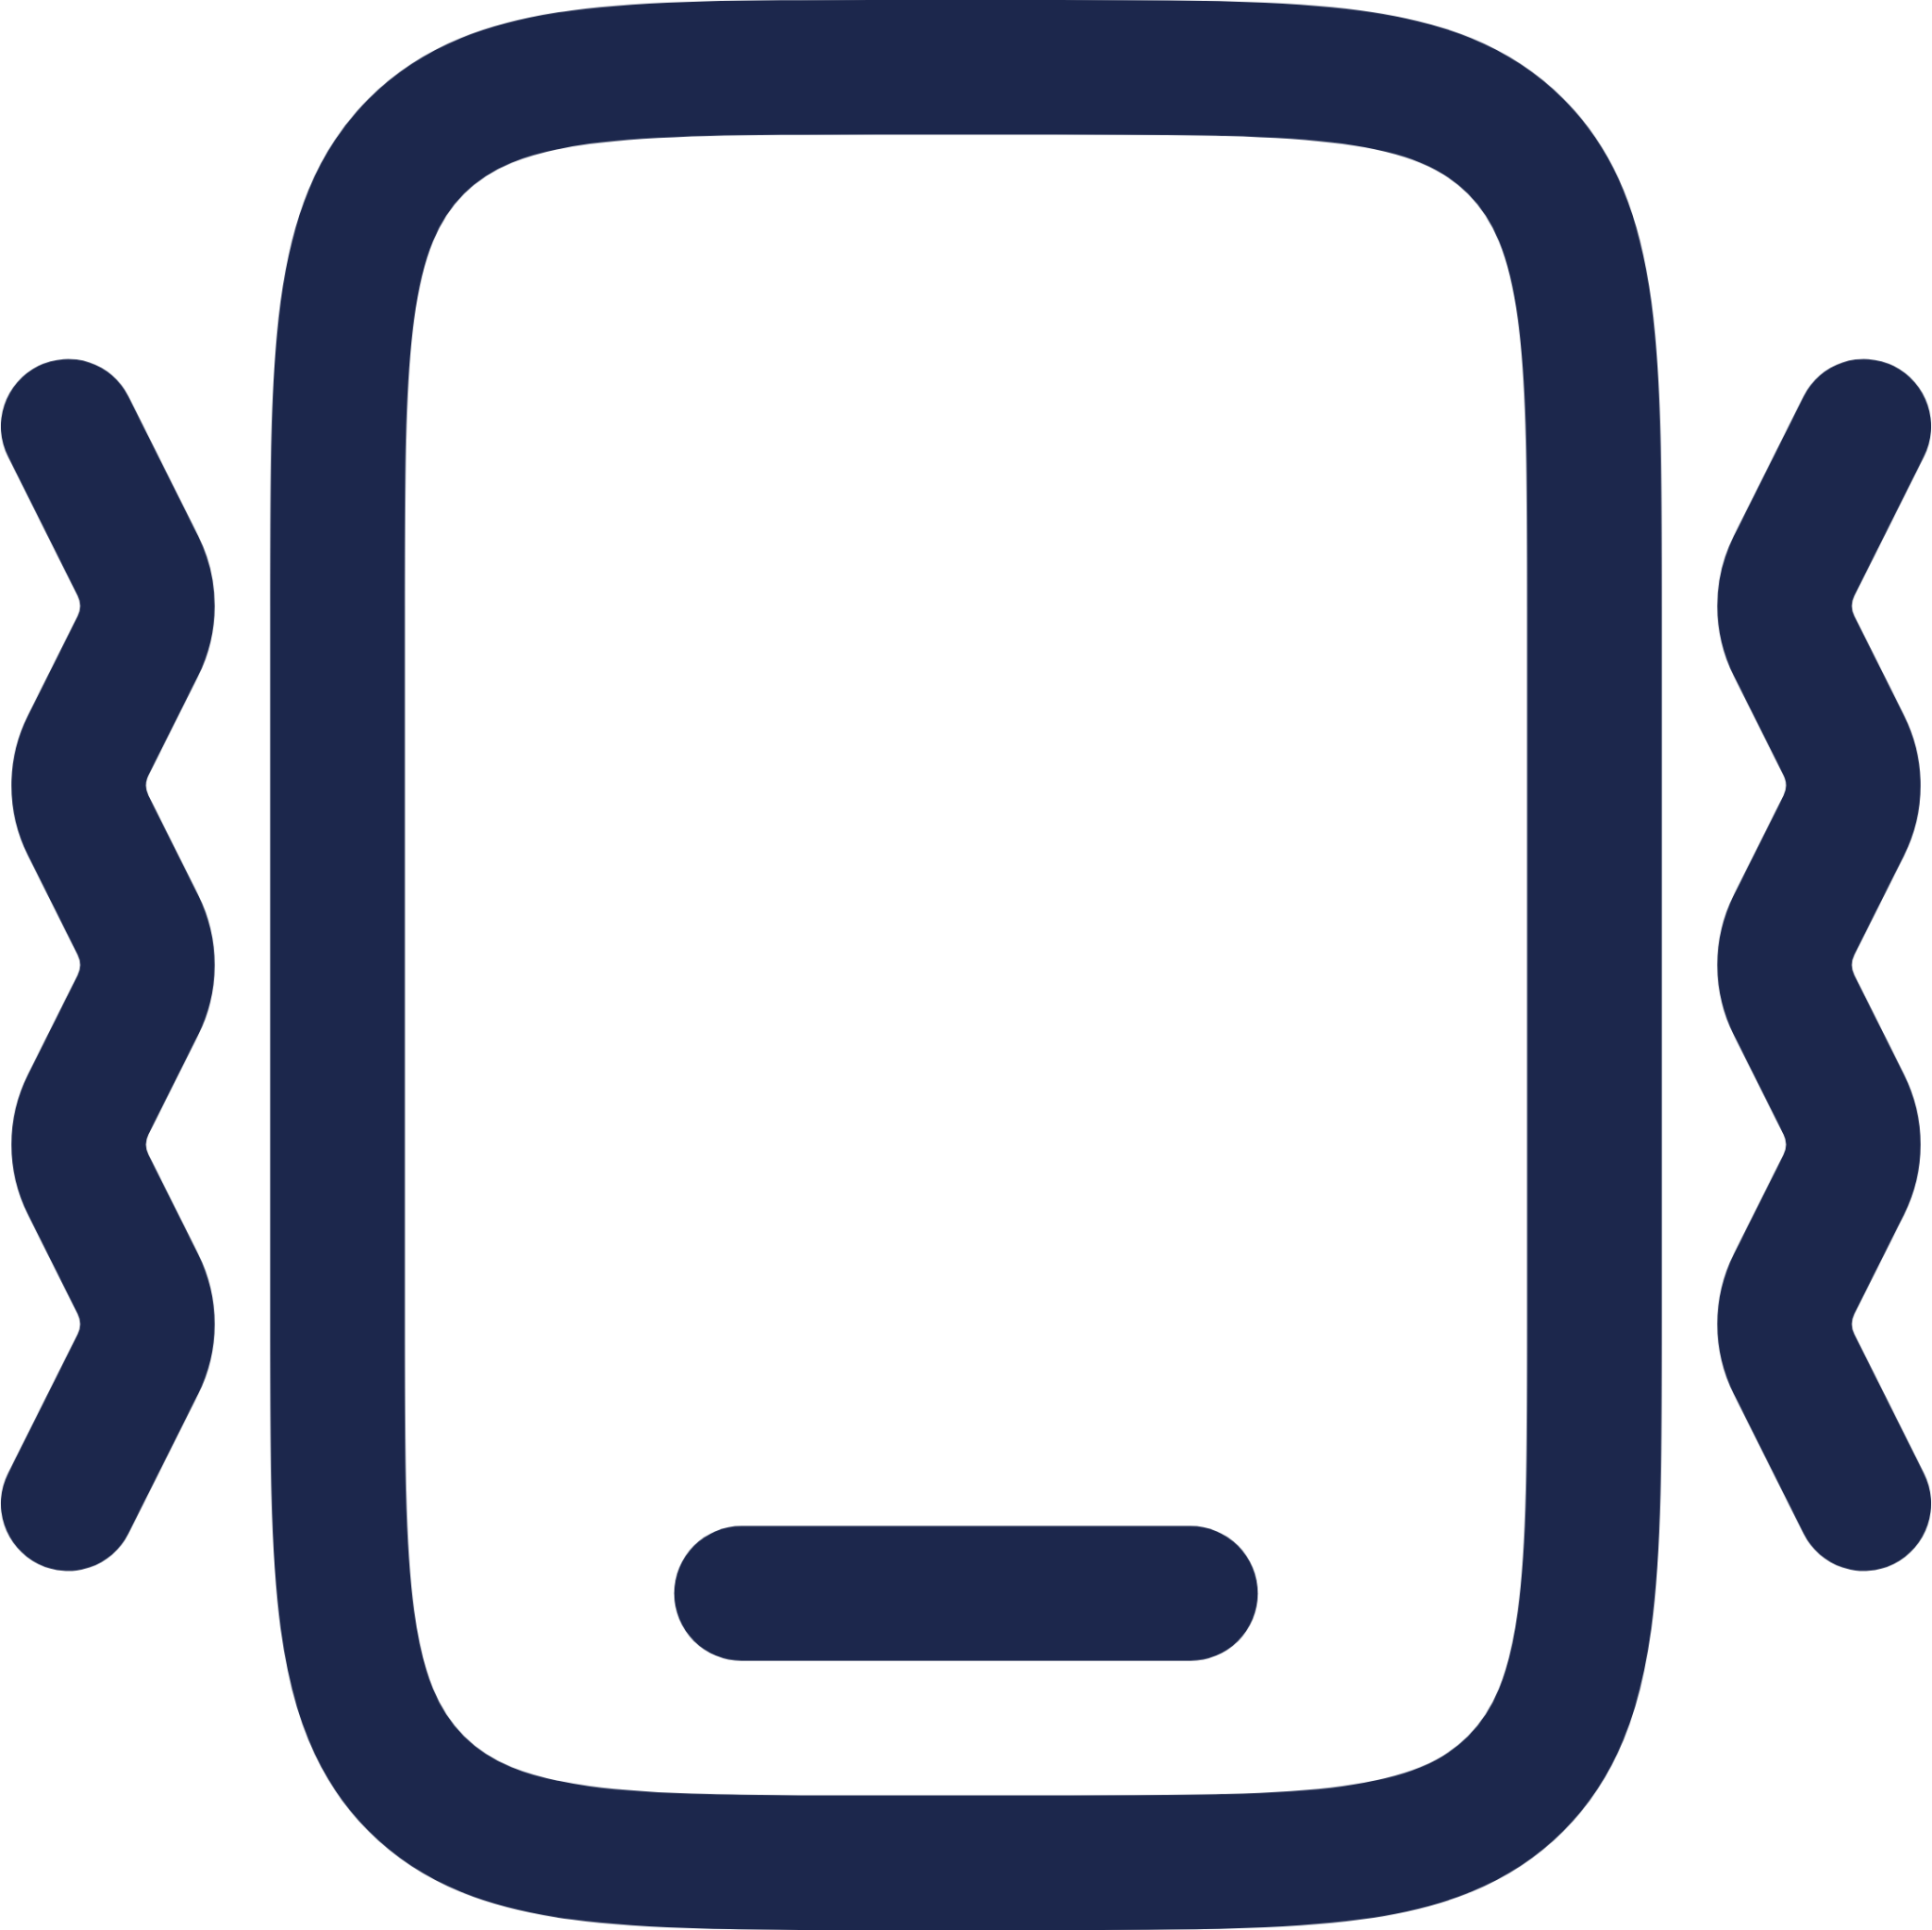 Smartphone Vibration icon